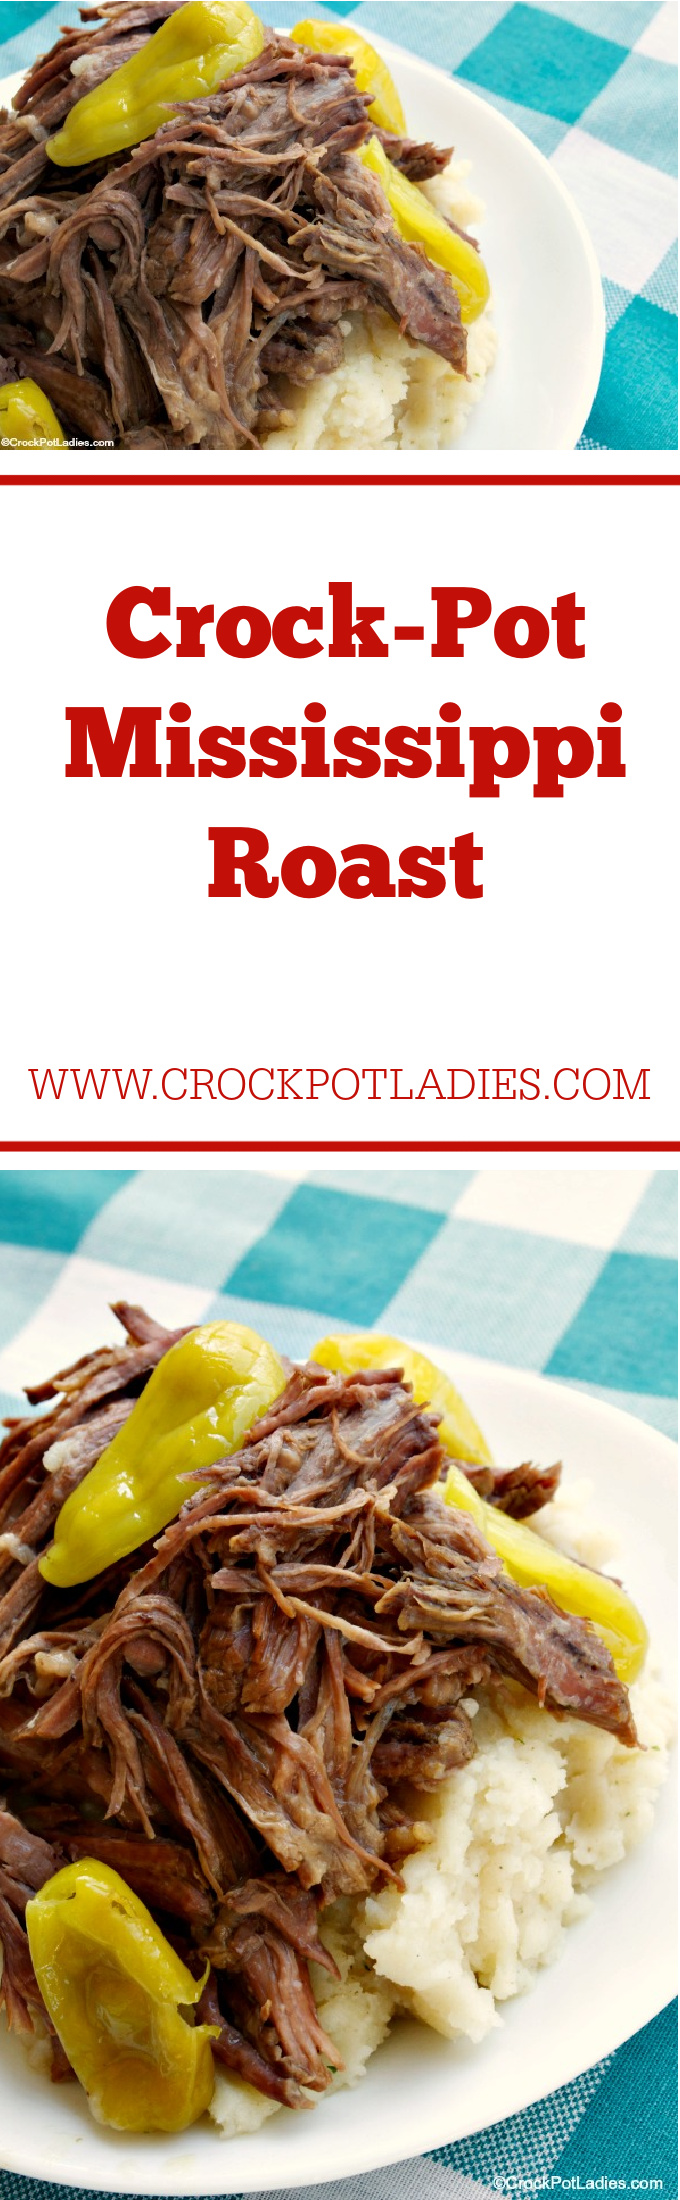 Crock-Pot Mississippi Roast